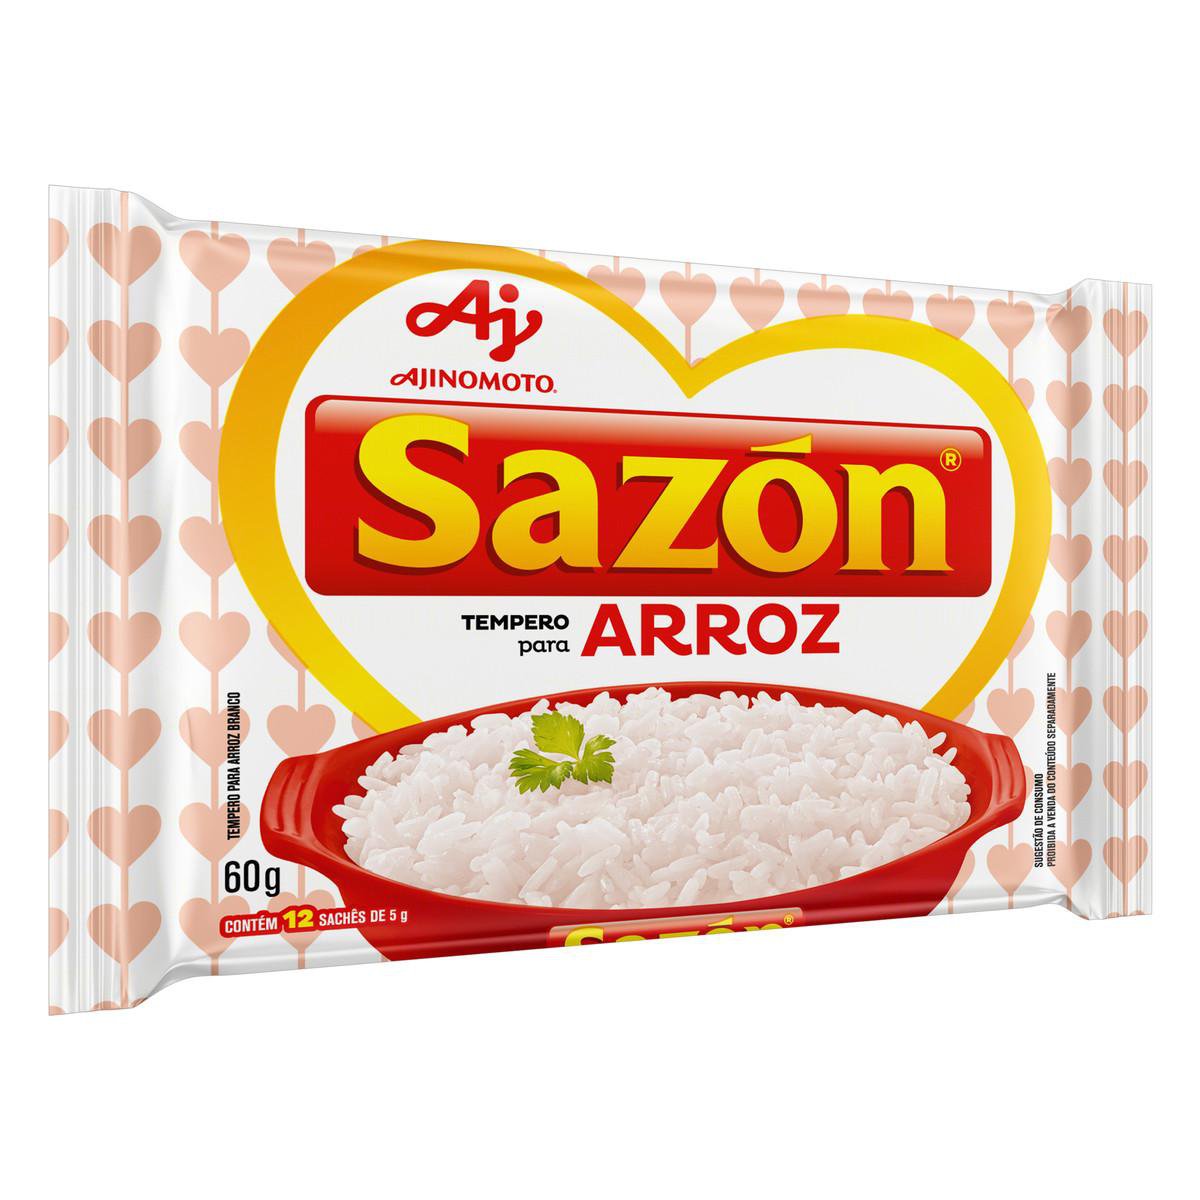 AJINOMOTO - Sazón - Rice Seasoning - 60g - FINAL SALE - EXPIRED or CLOSE TO EXPIRY